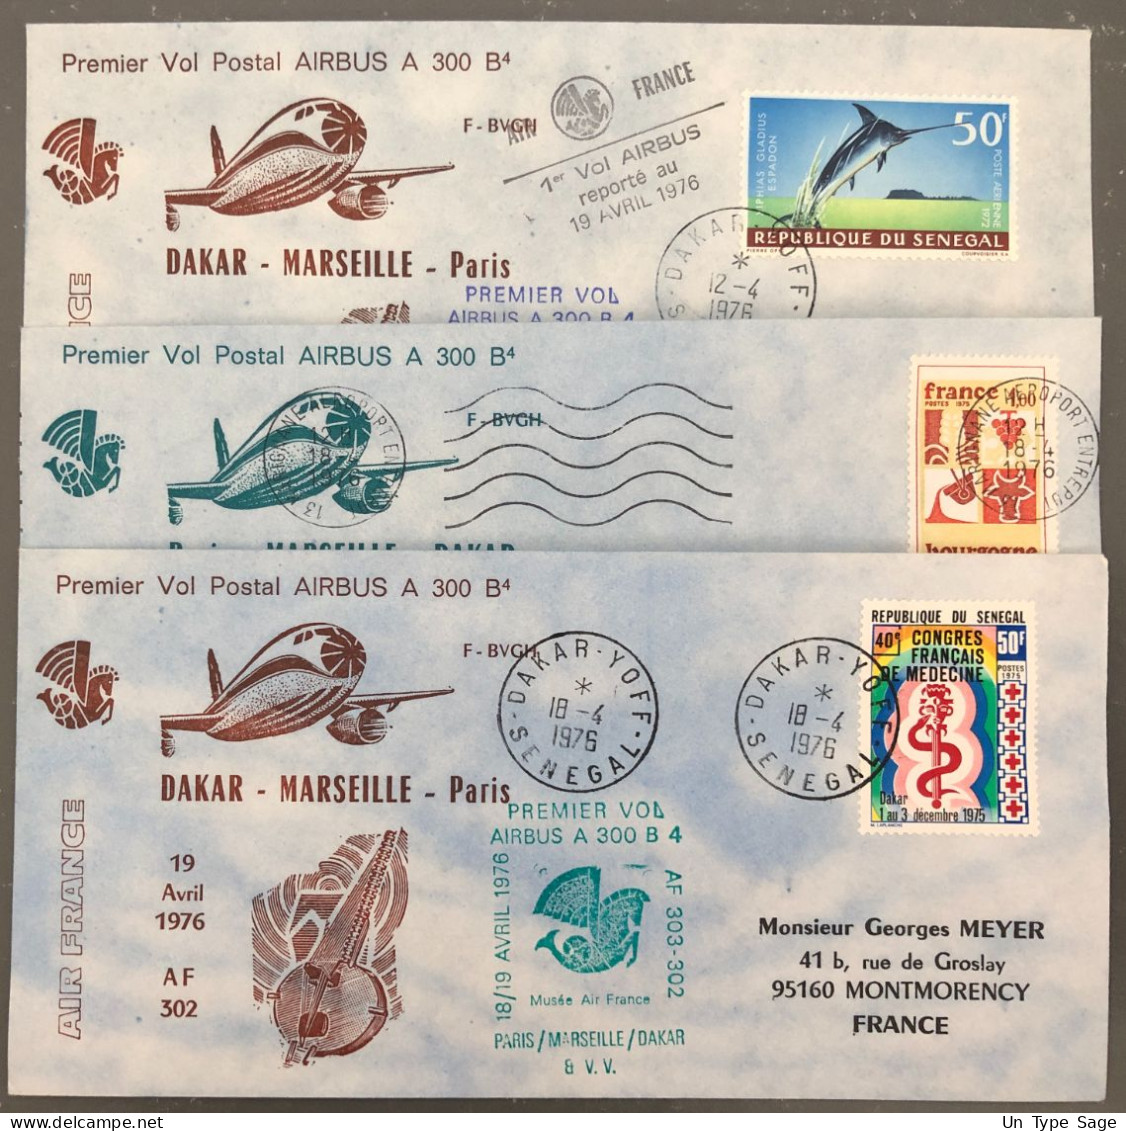 France, Premier Vol (Air France) Paris, Marseille, Dakar, 19.4.1976 - 3 Enveloppes - (B1499) - Premiers Vols